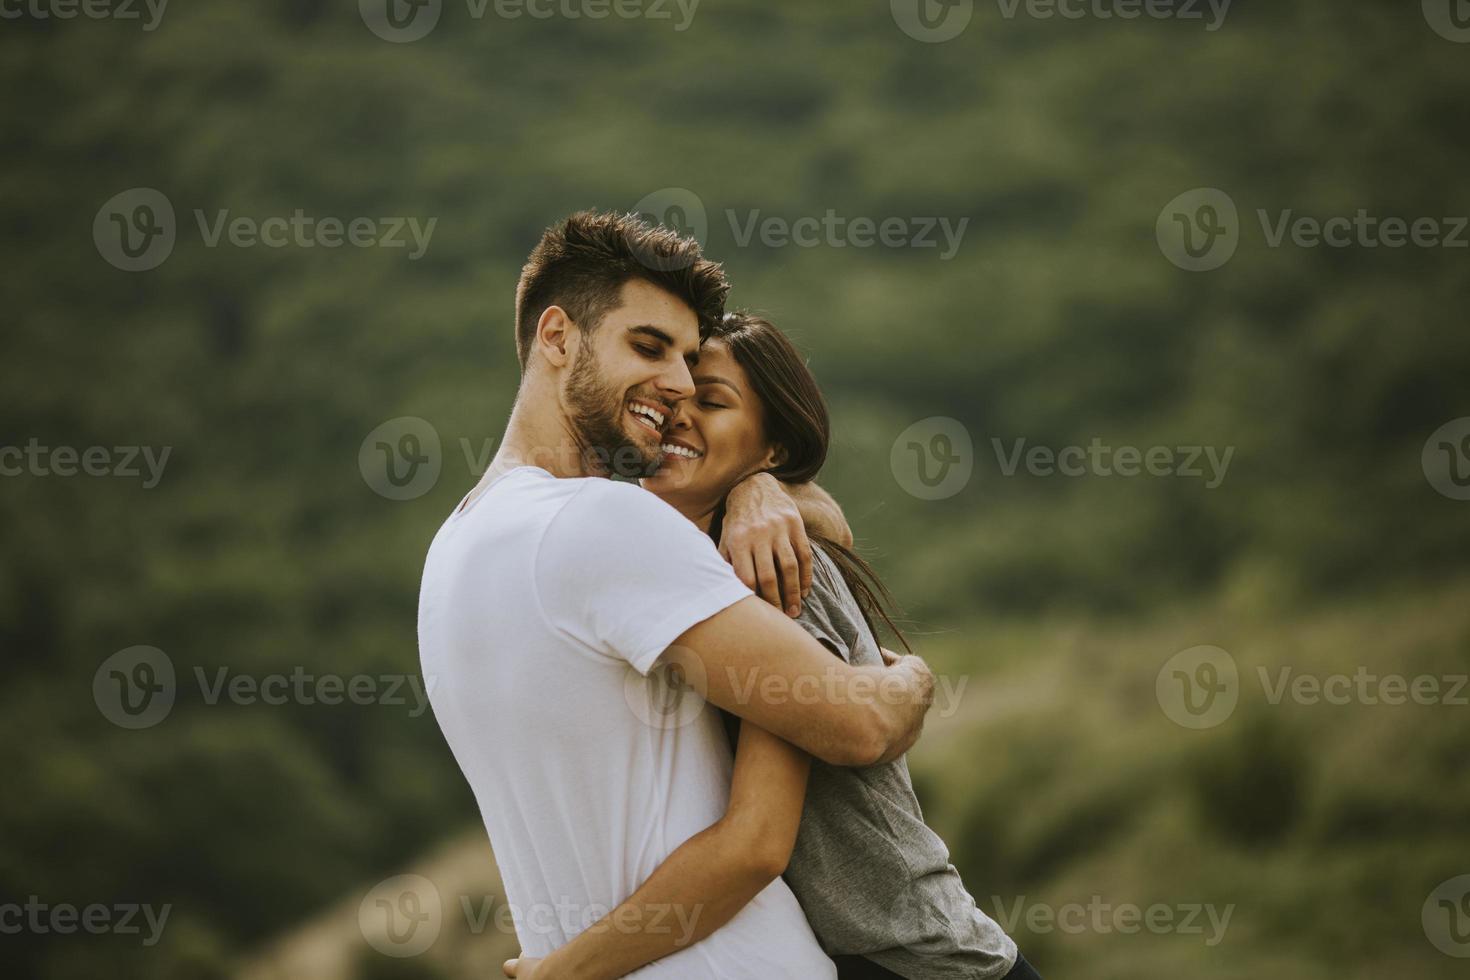 lyckliga unga par i kärlek på gräsplanen foto